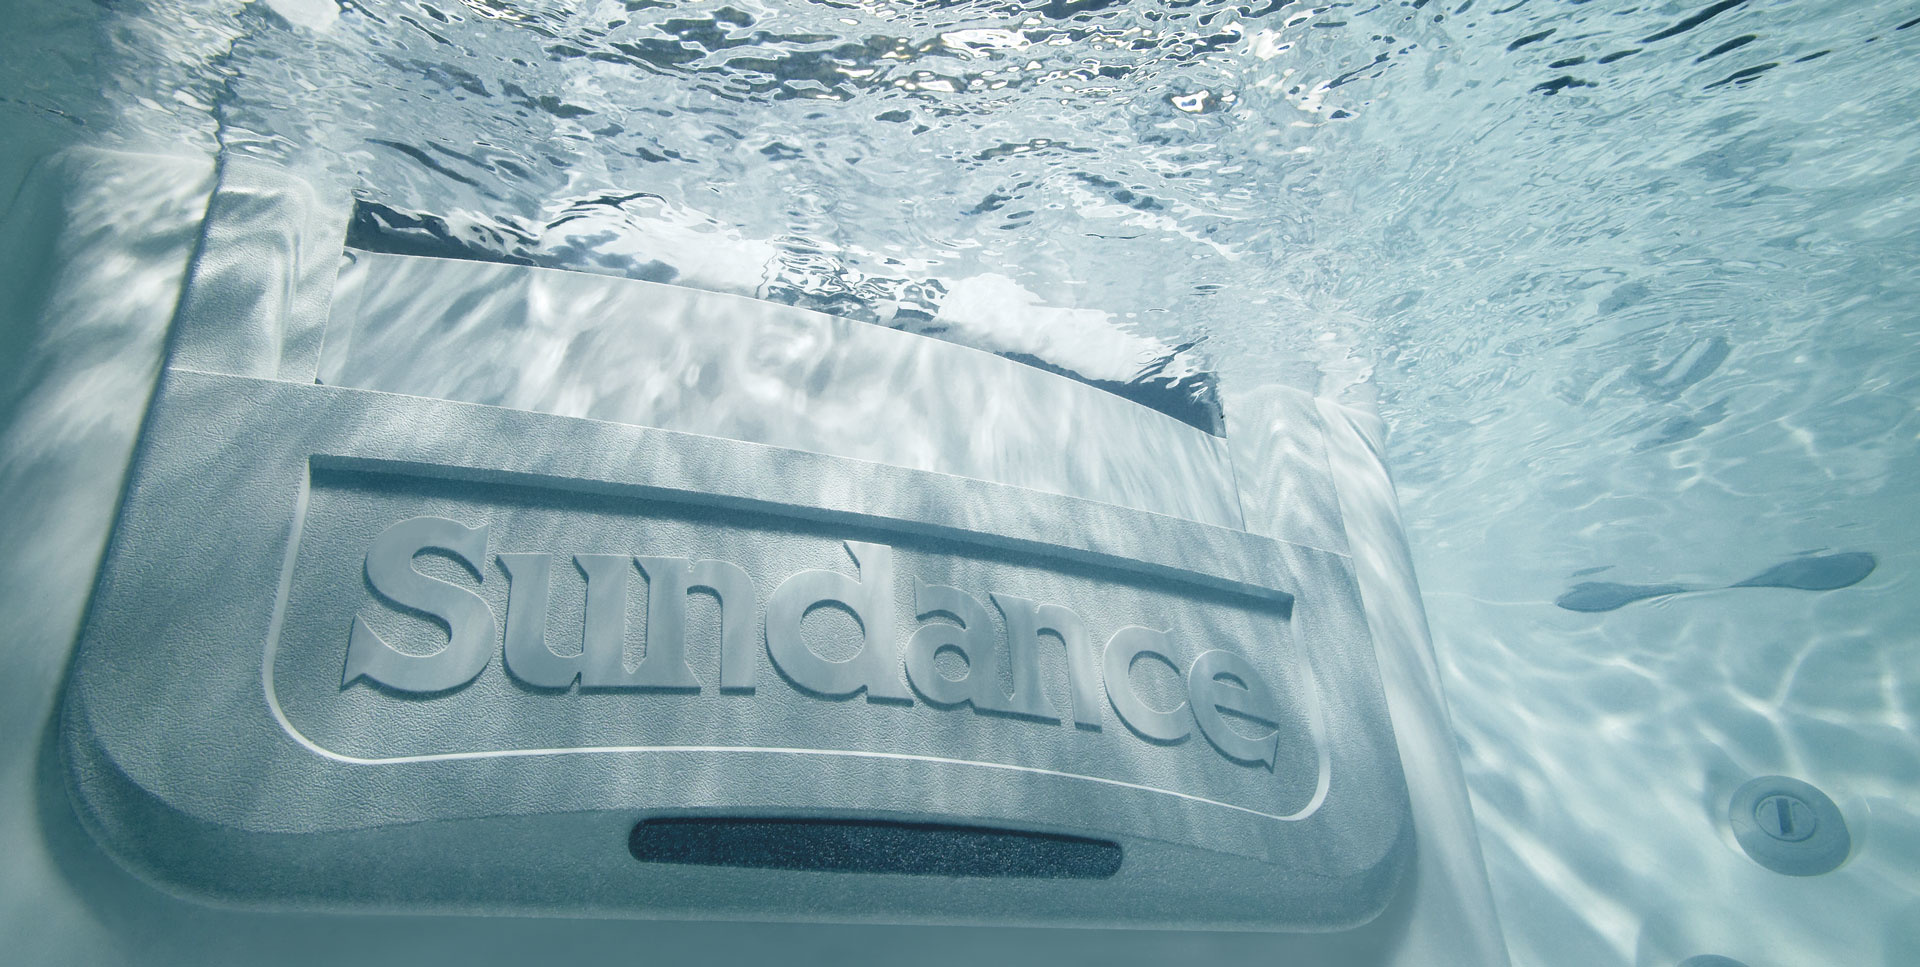 Sundance massasjebad filterhus til filter under vann